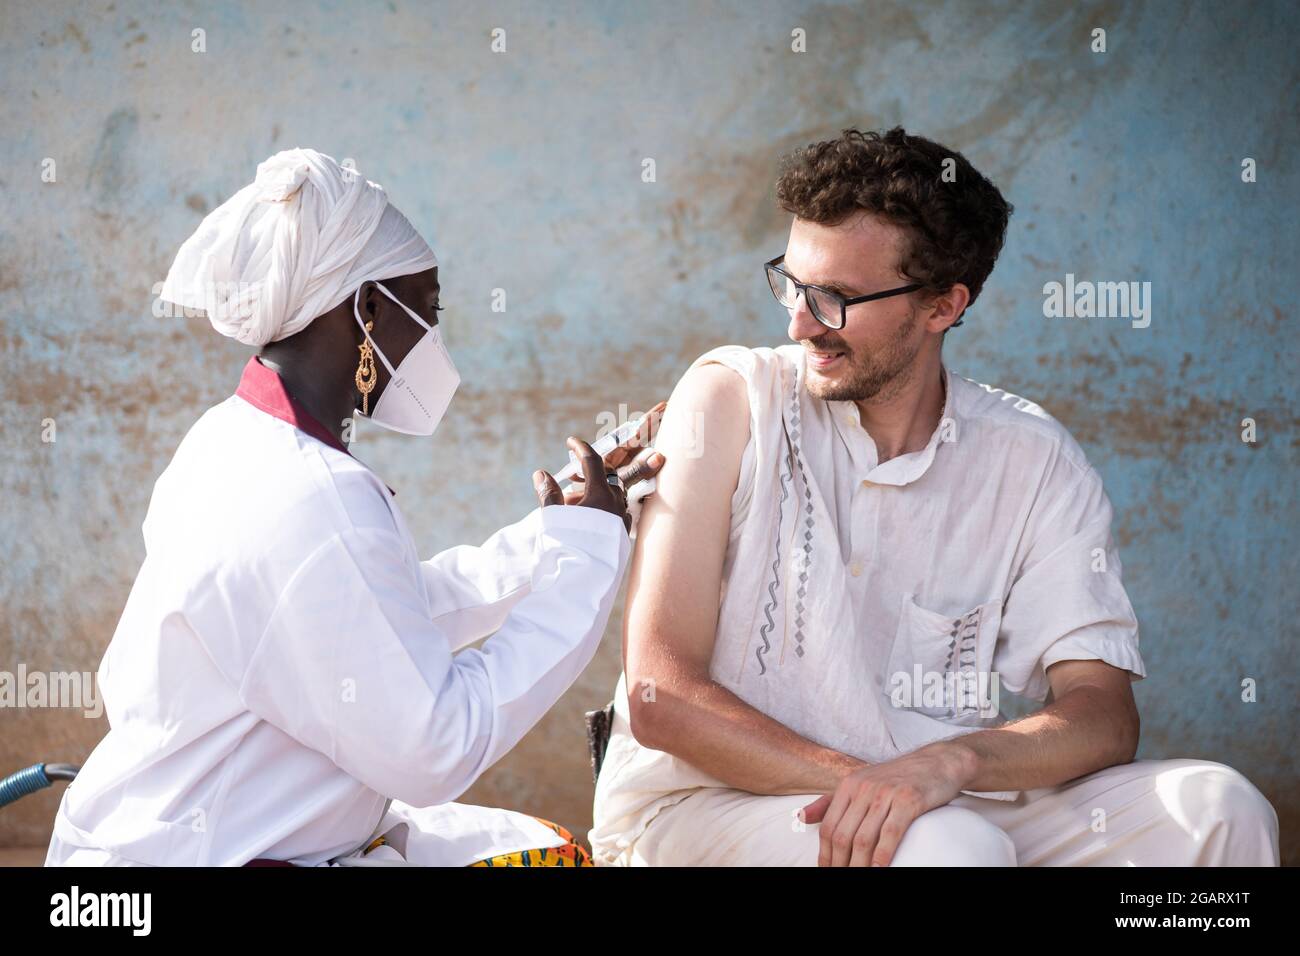 In questa immagine, un'operatrice sanitaria caucasica bianca contenuto sta receving un vaccino sparato da un medico nero femmina durante la prevenzione di malattie infettive in Foto Stock